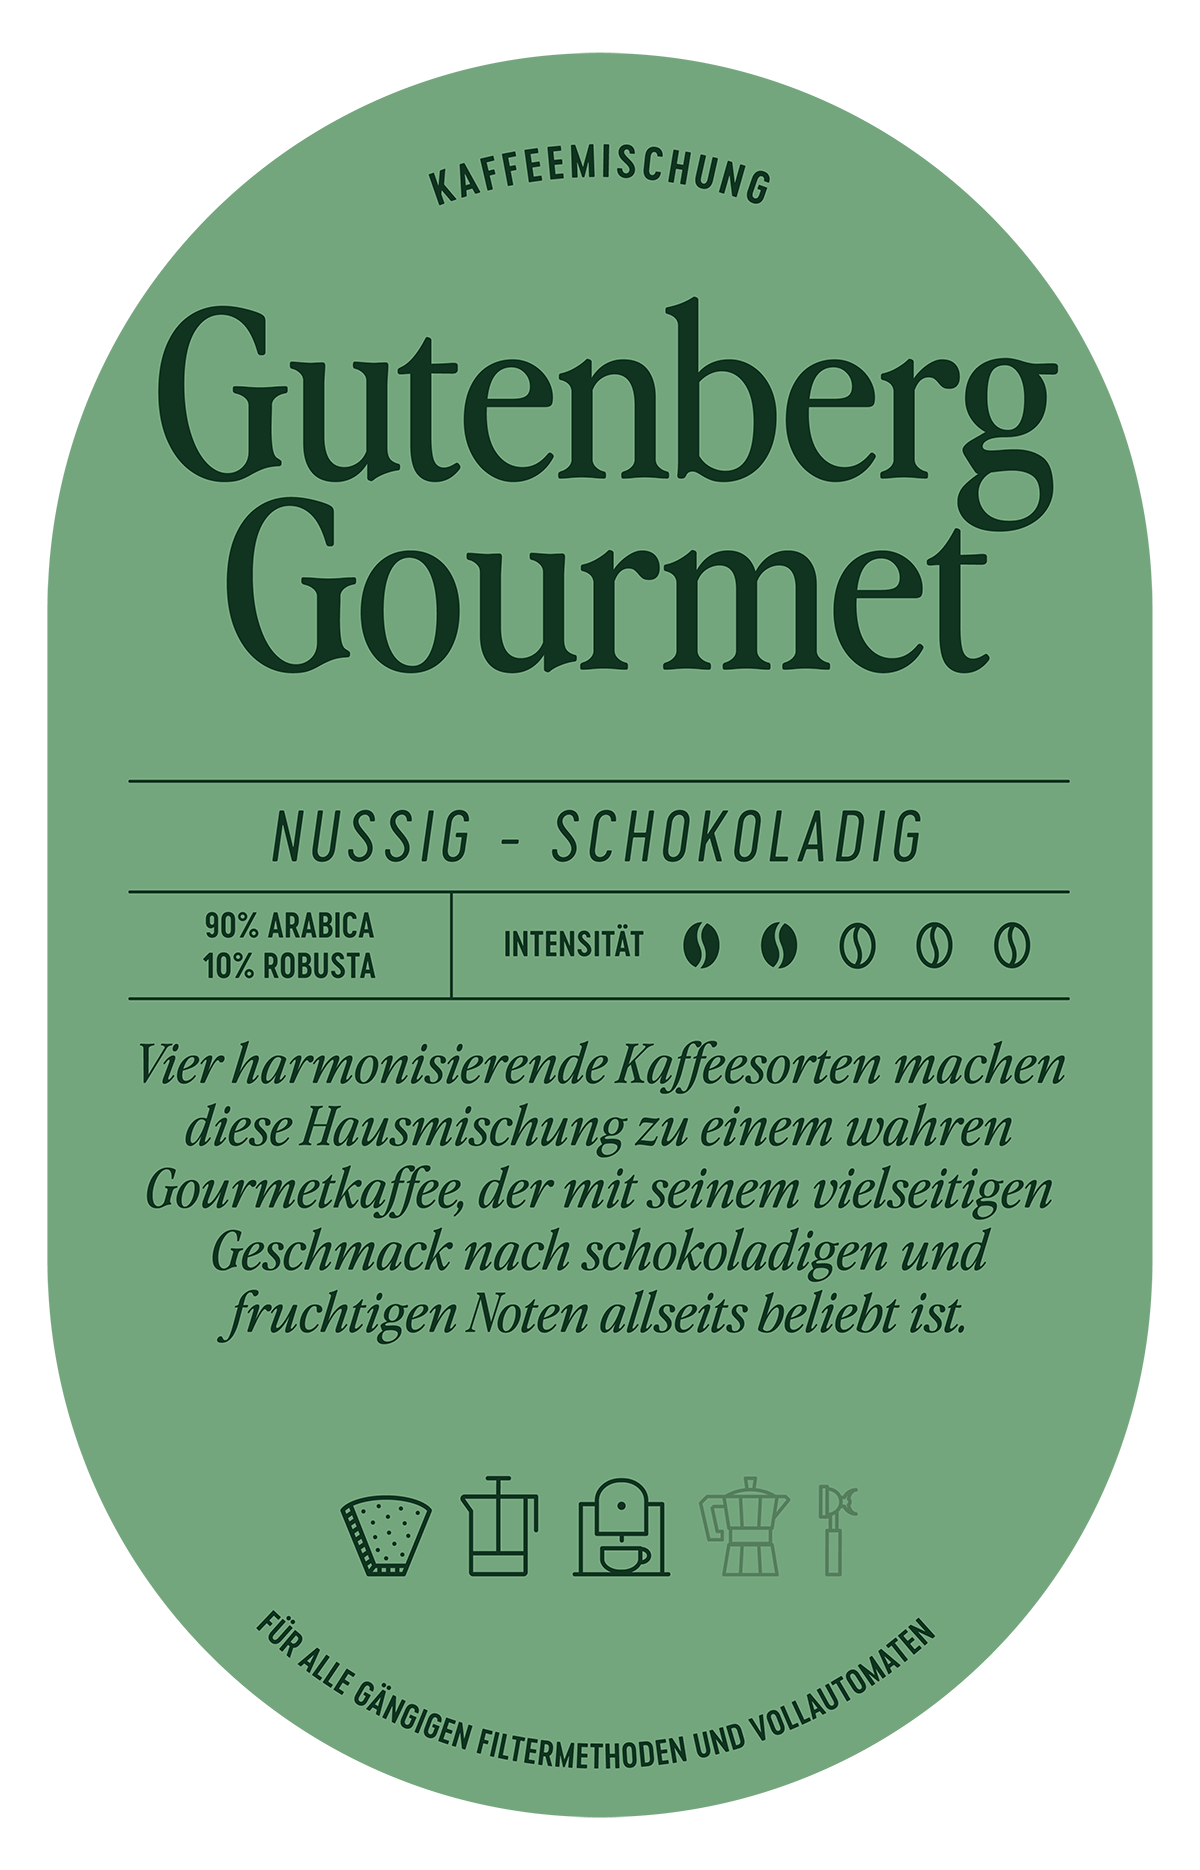 Gutenberg Gourmet Kaffee Label